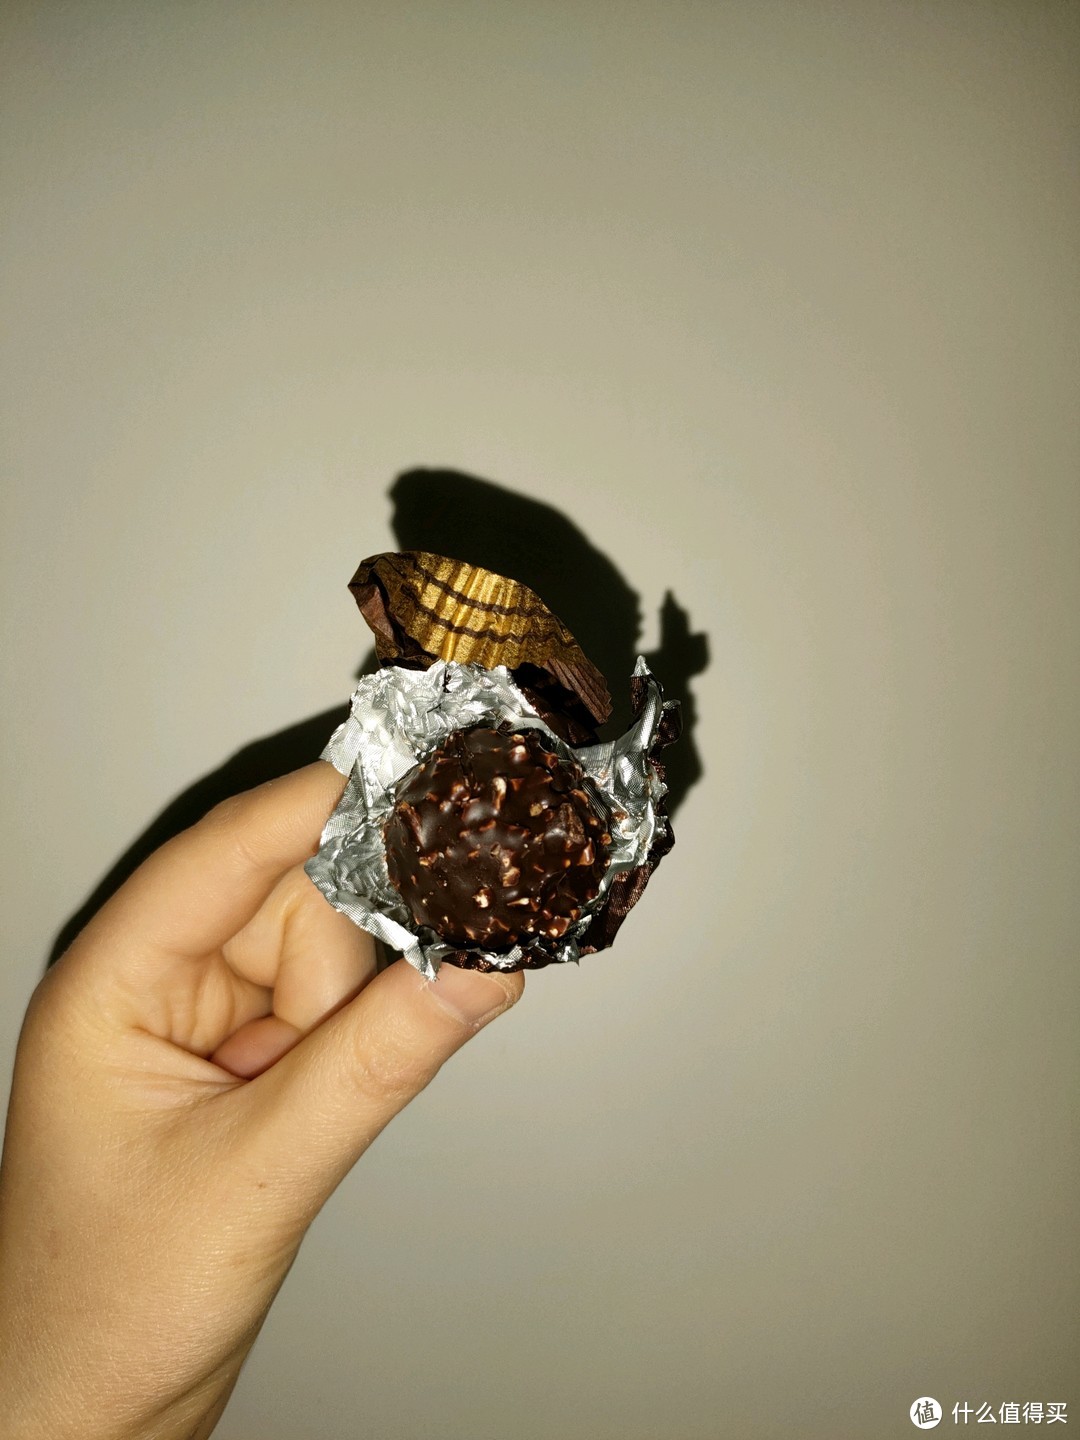 为什么情人节喜欢送巧克力当礼物